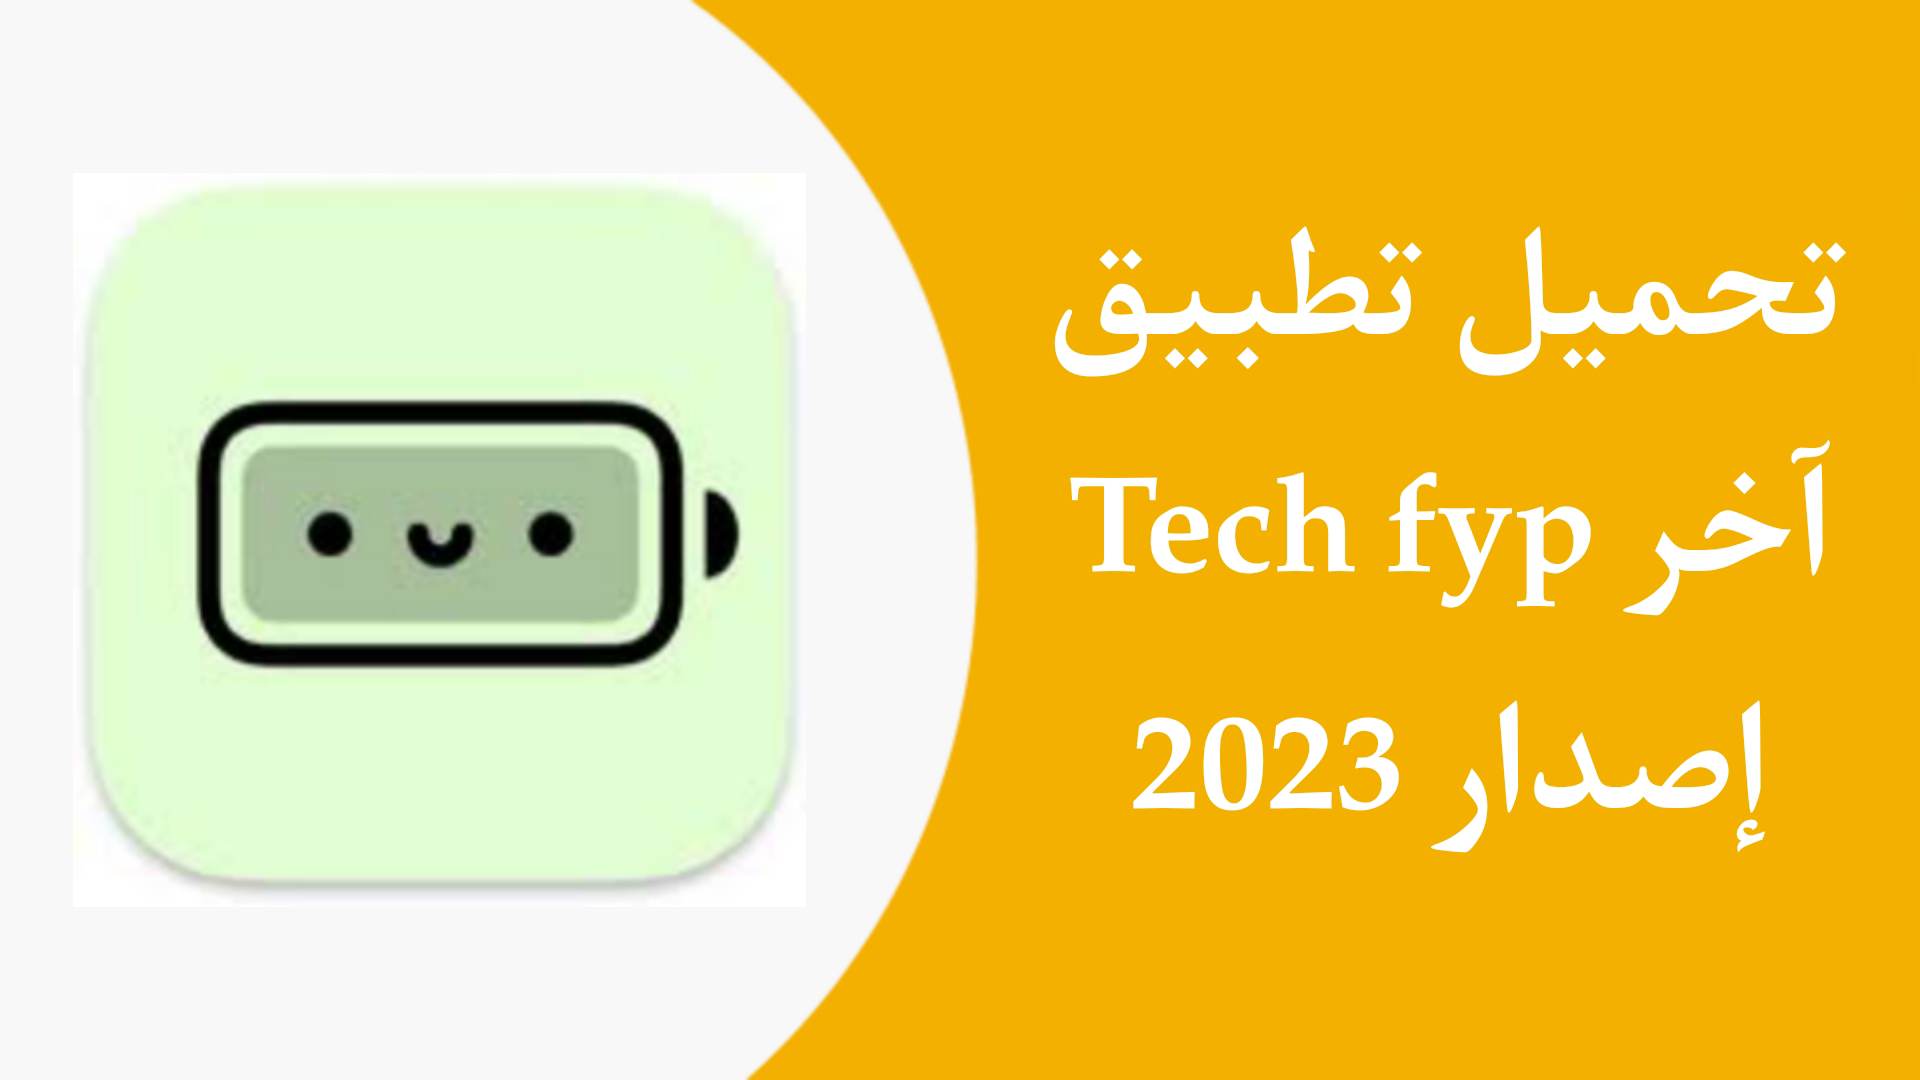 تحميل تطبيق Tech Fyp APK اخر اصدار 2023 من ميديا فاير